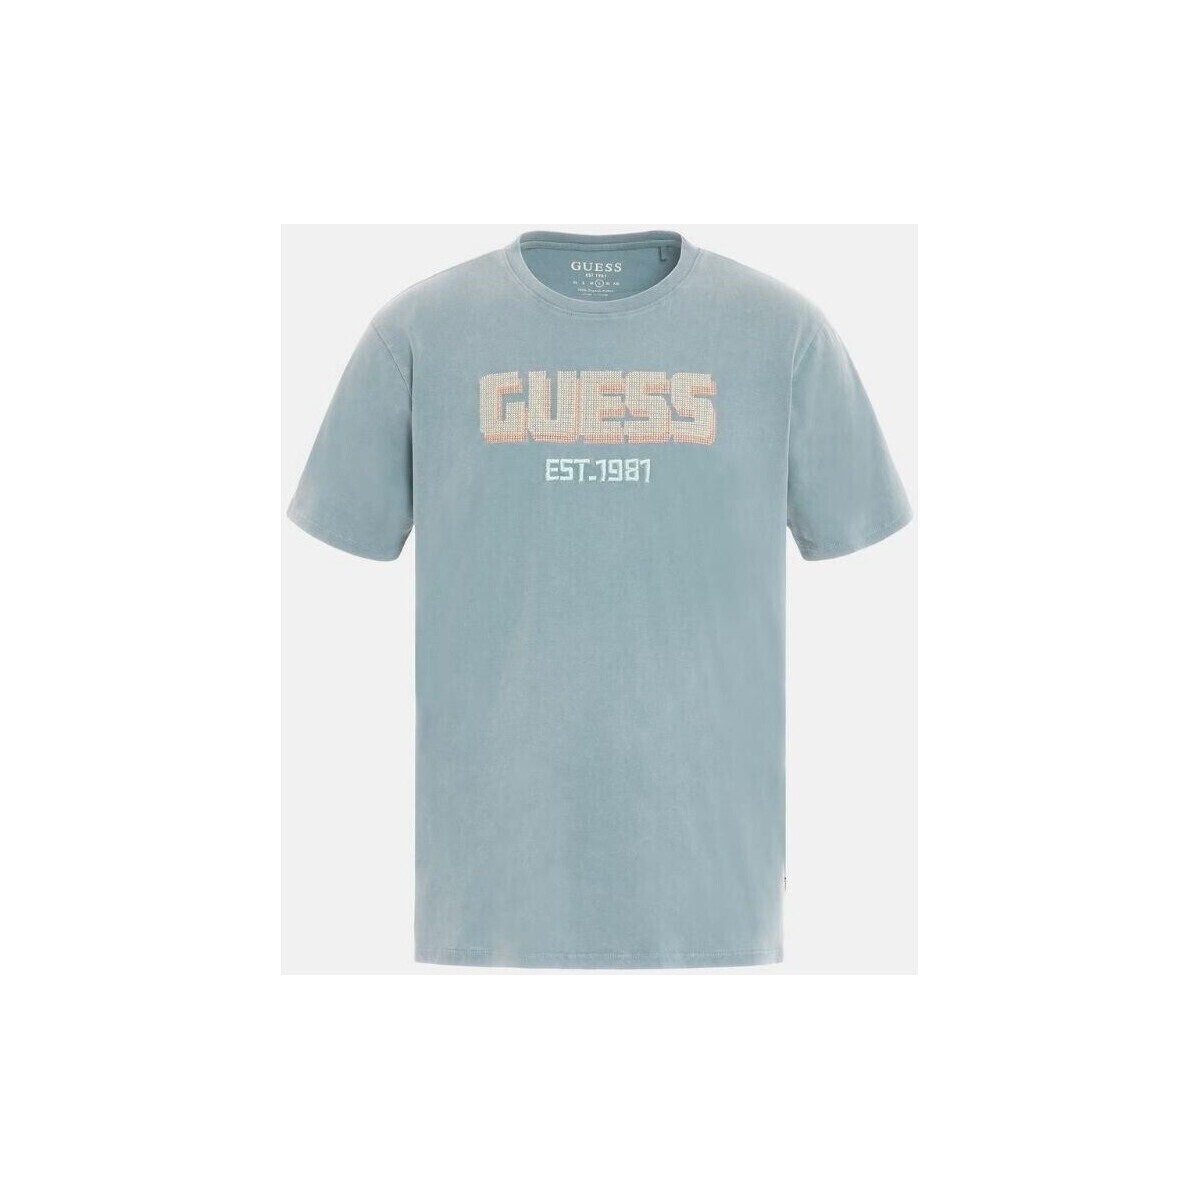 textil Herr T-shirts Guess M3YI52 KBDL0 Blå